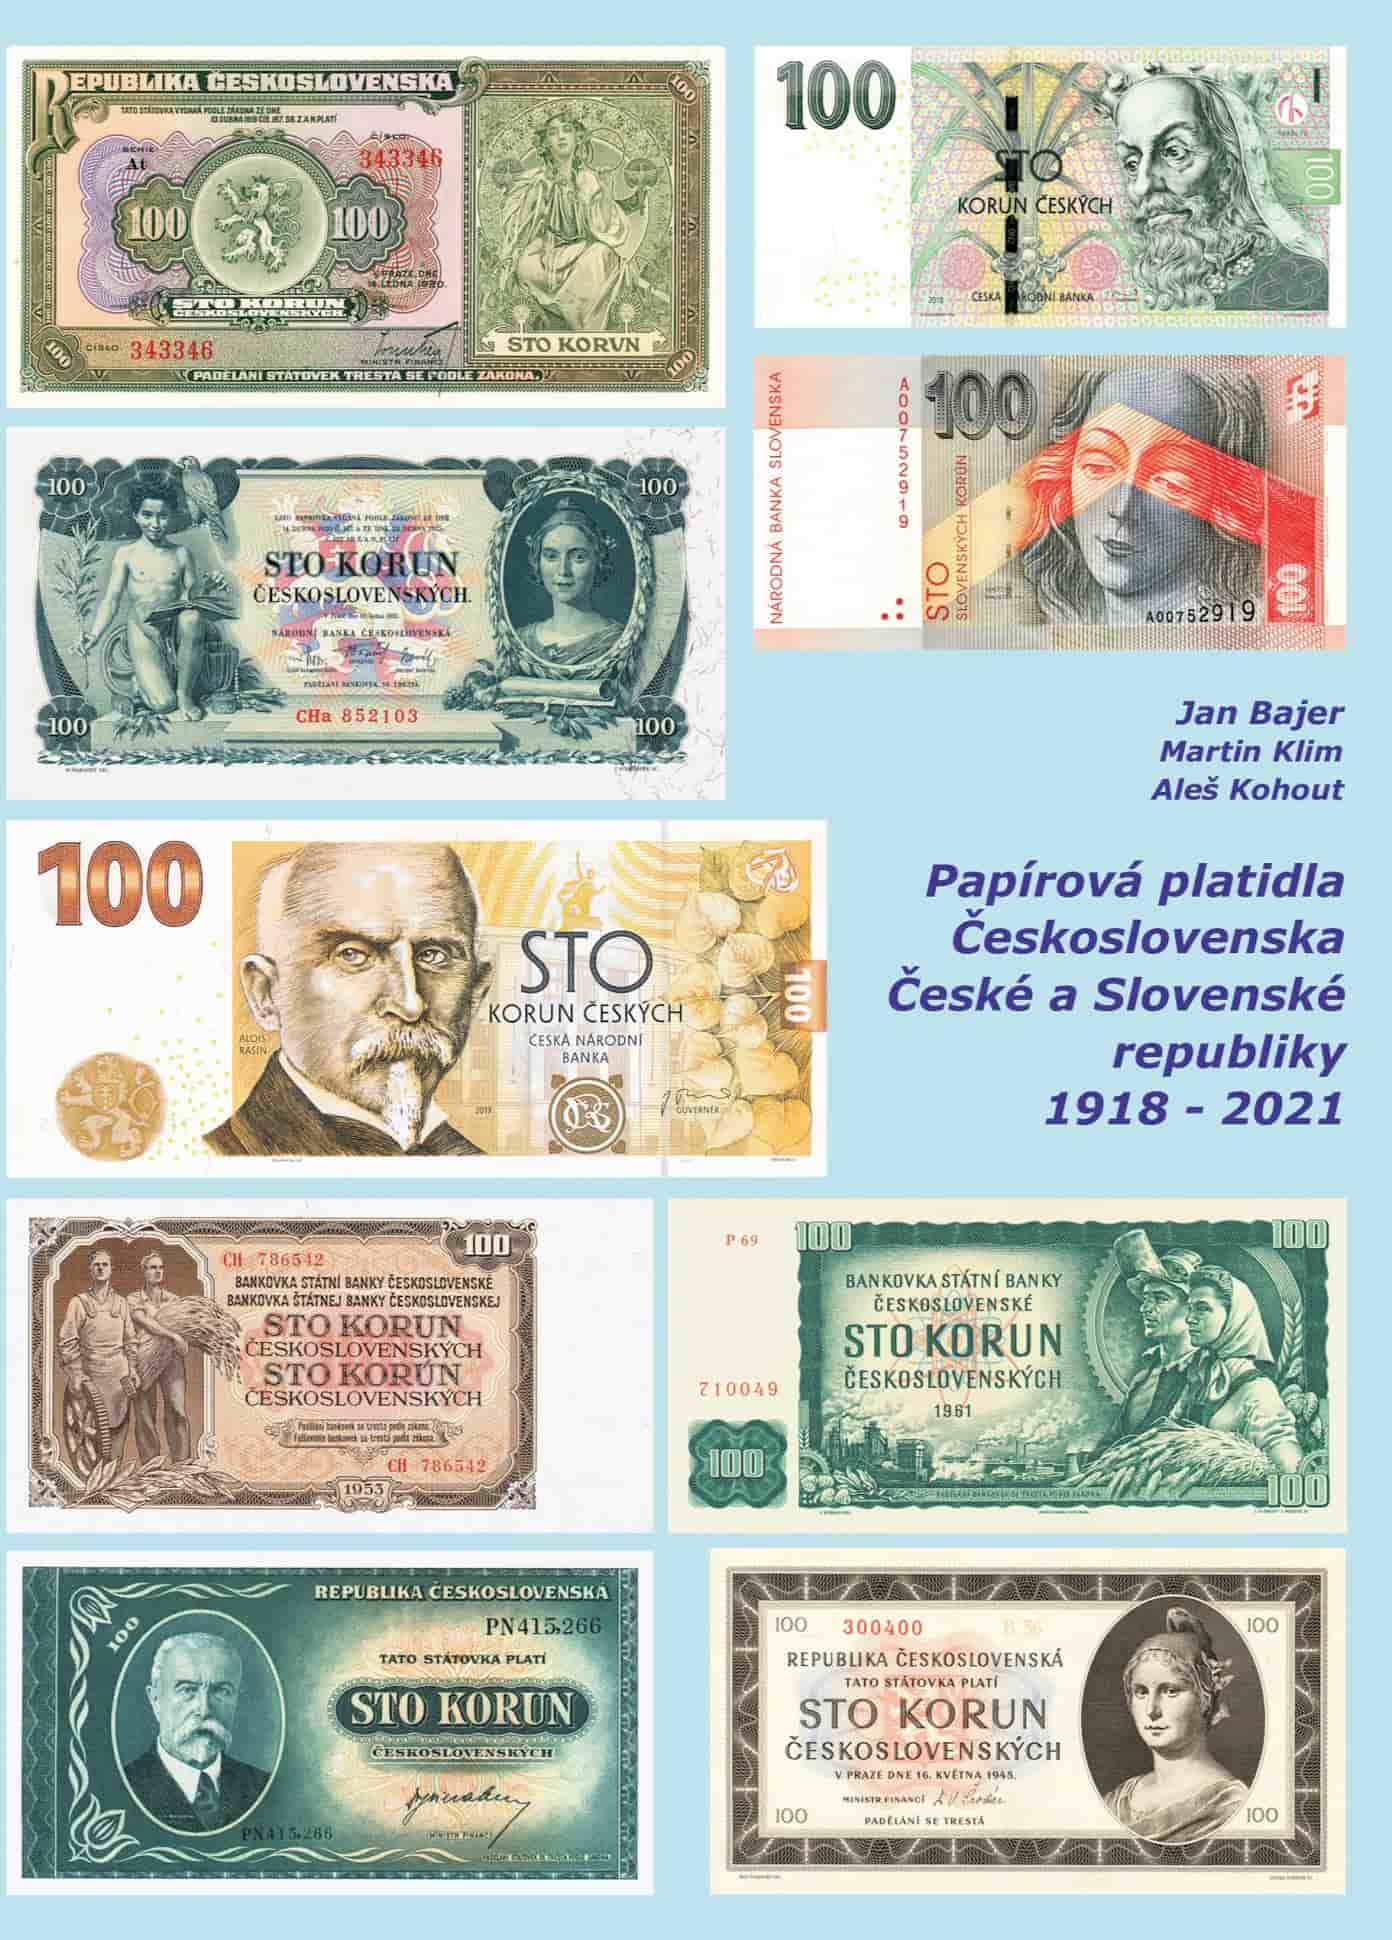 Papírová platidla Československa, České a Slovenské republiky 1918-2021